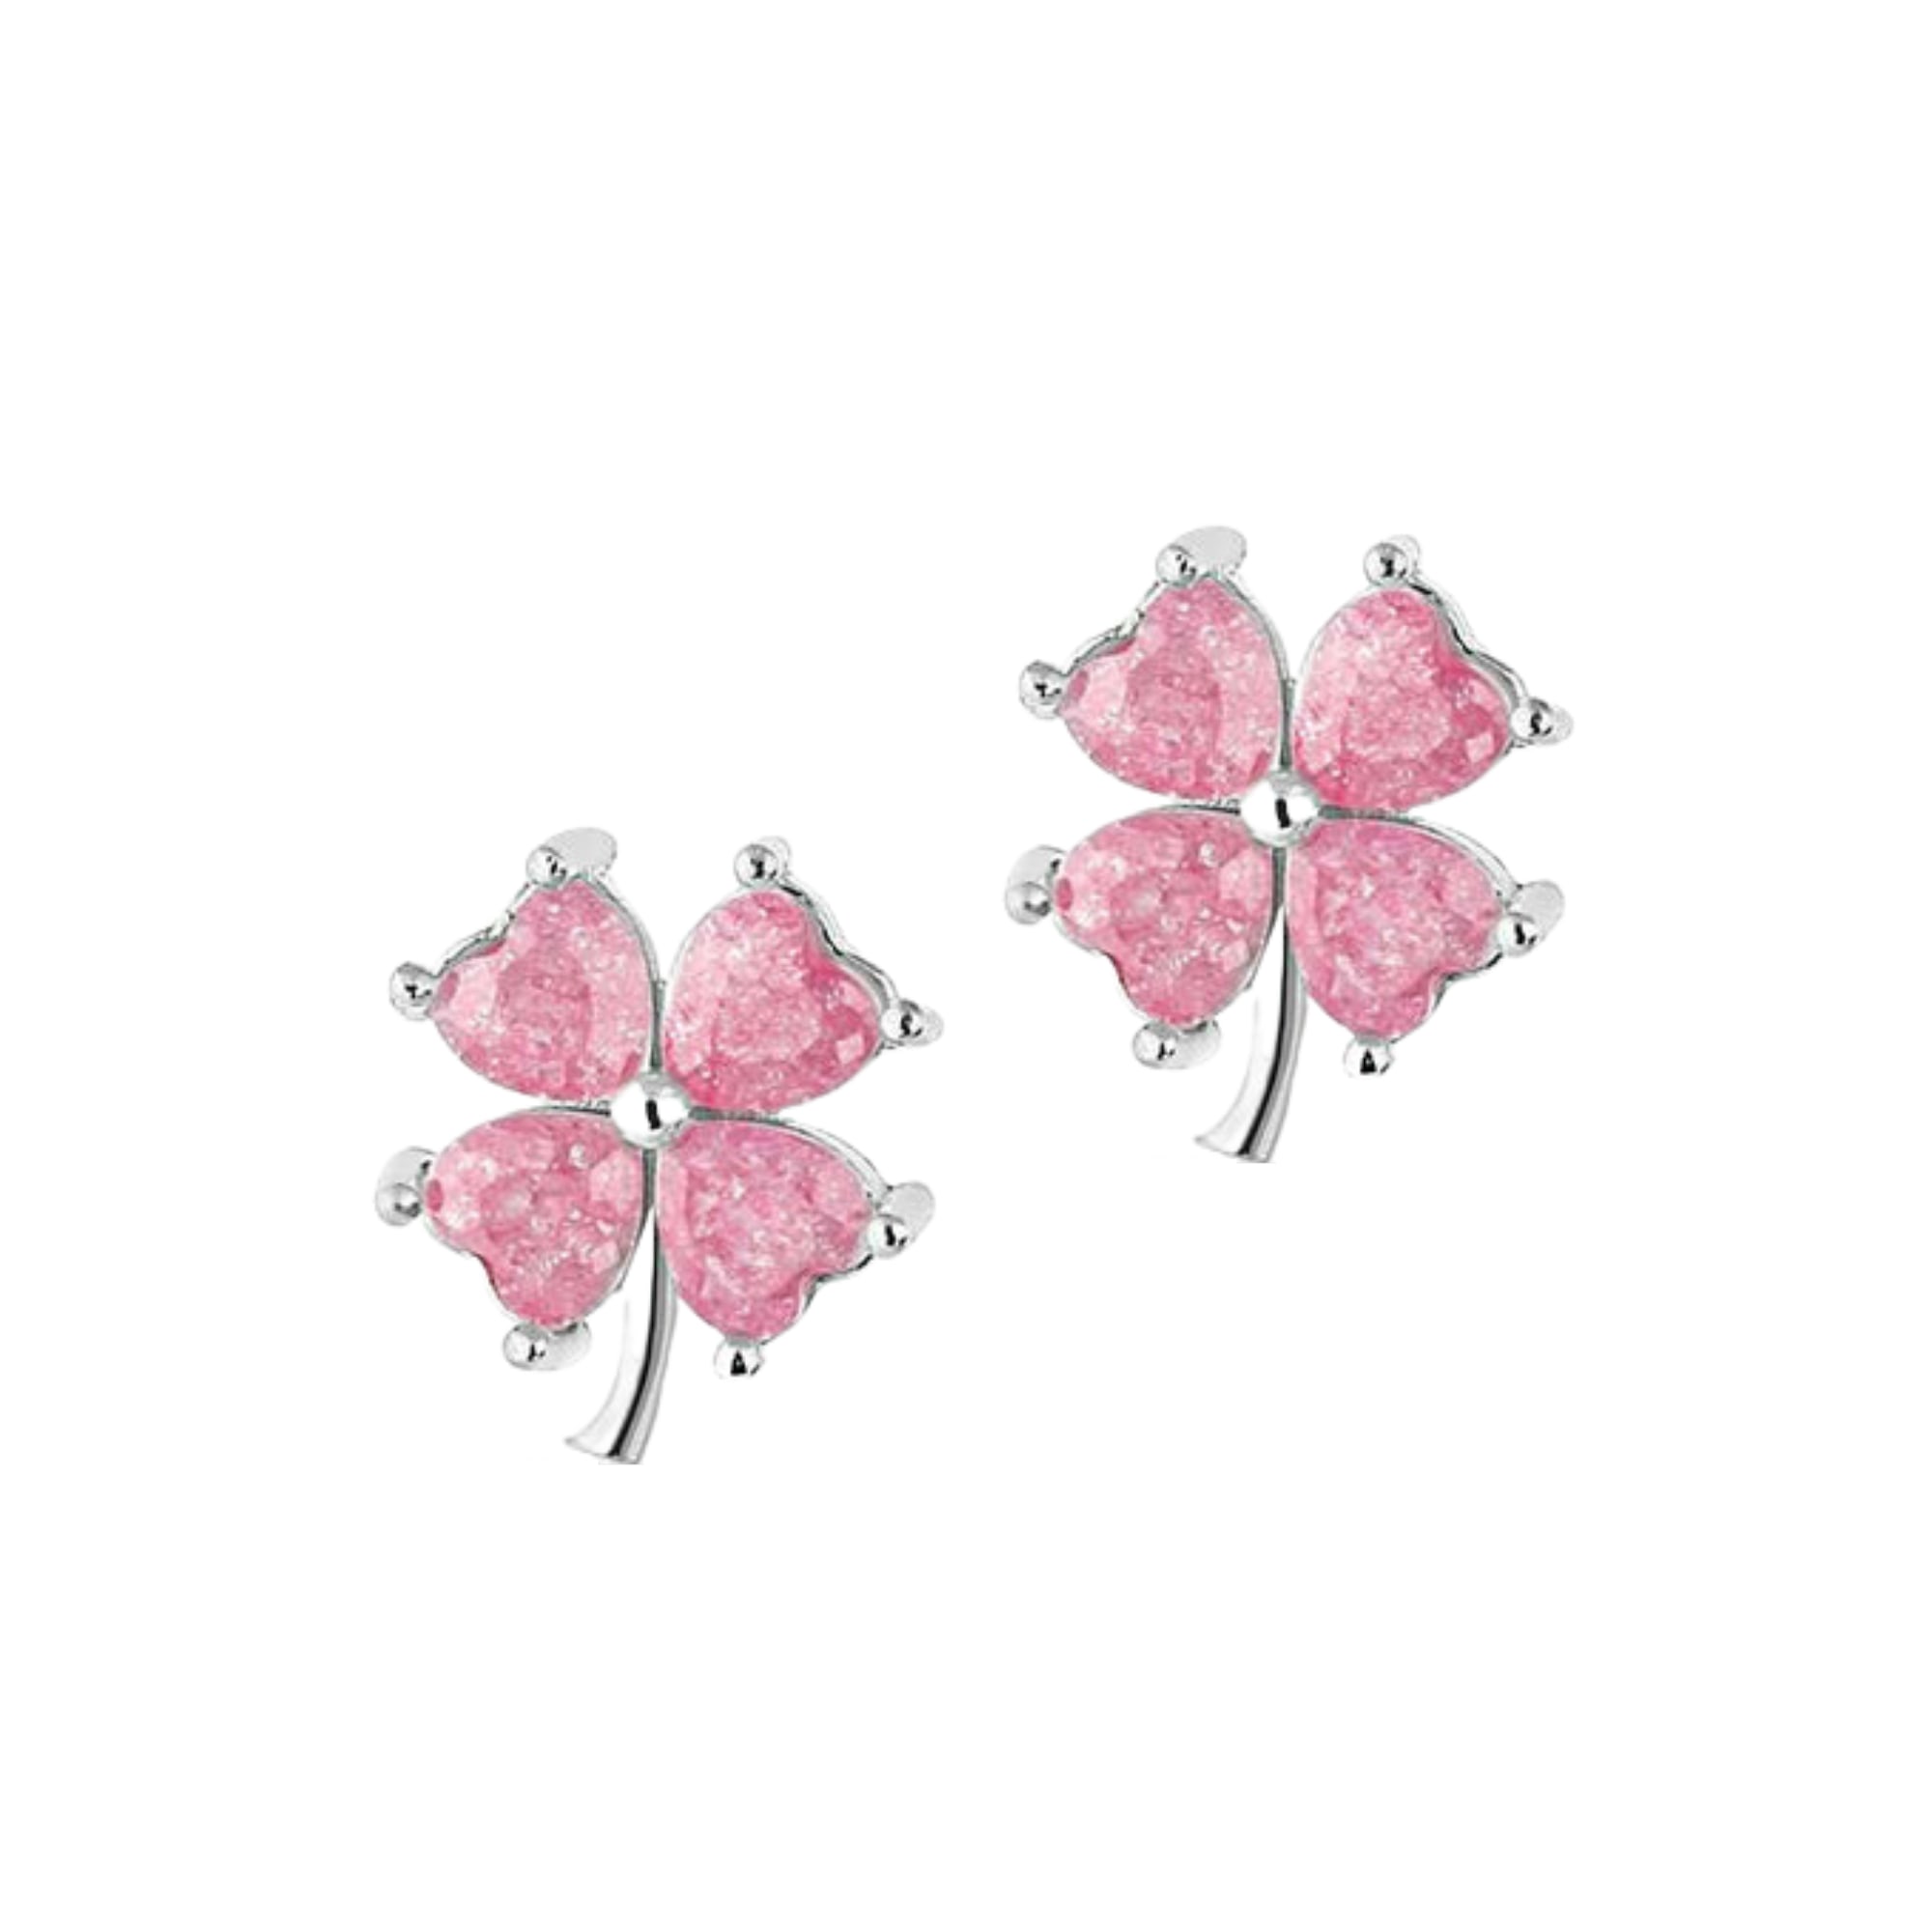 Spero London Women's Four Leaves Clover Sterling Silver Stud Earring Pink - Silver In Multi